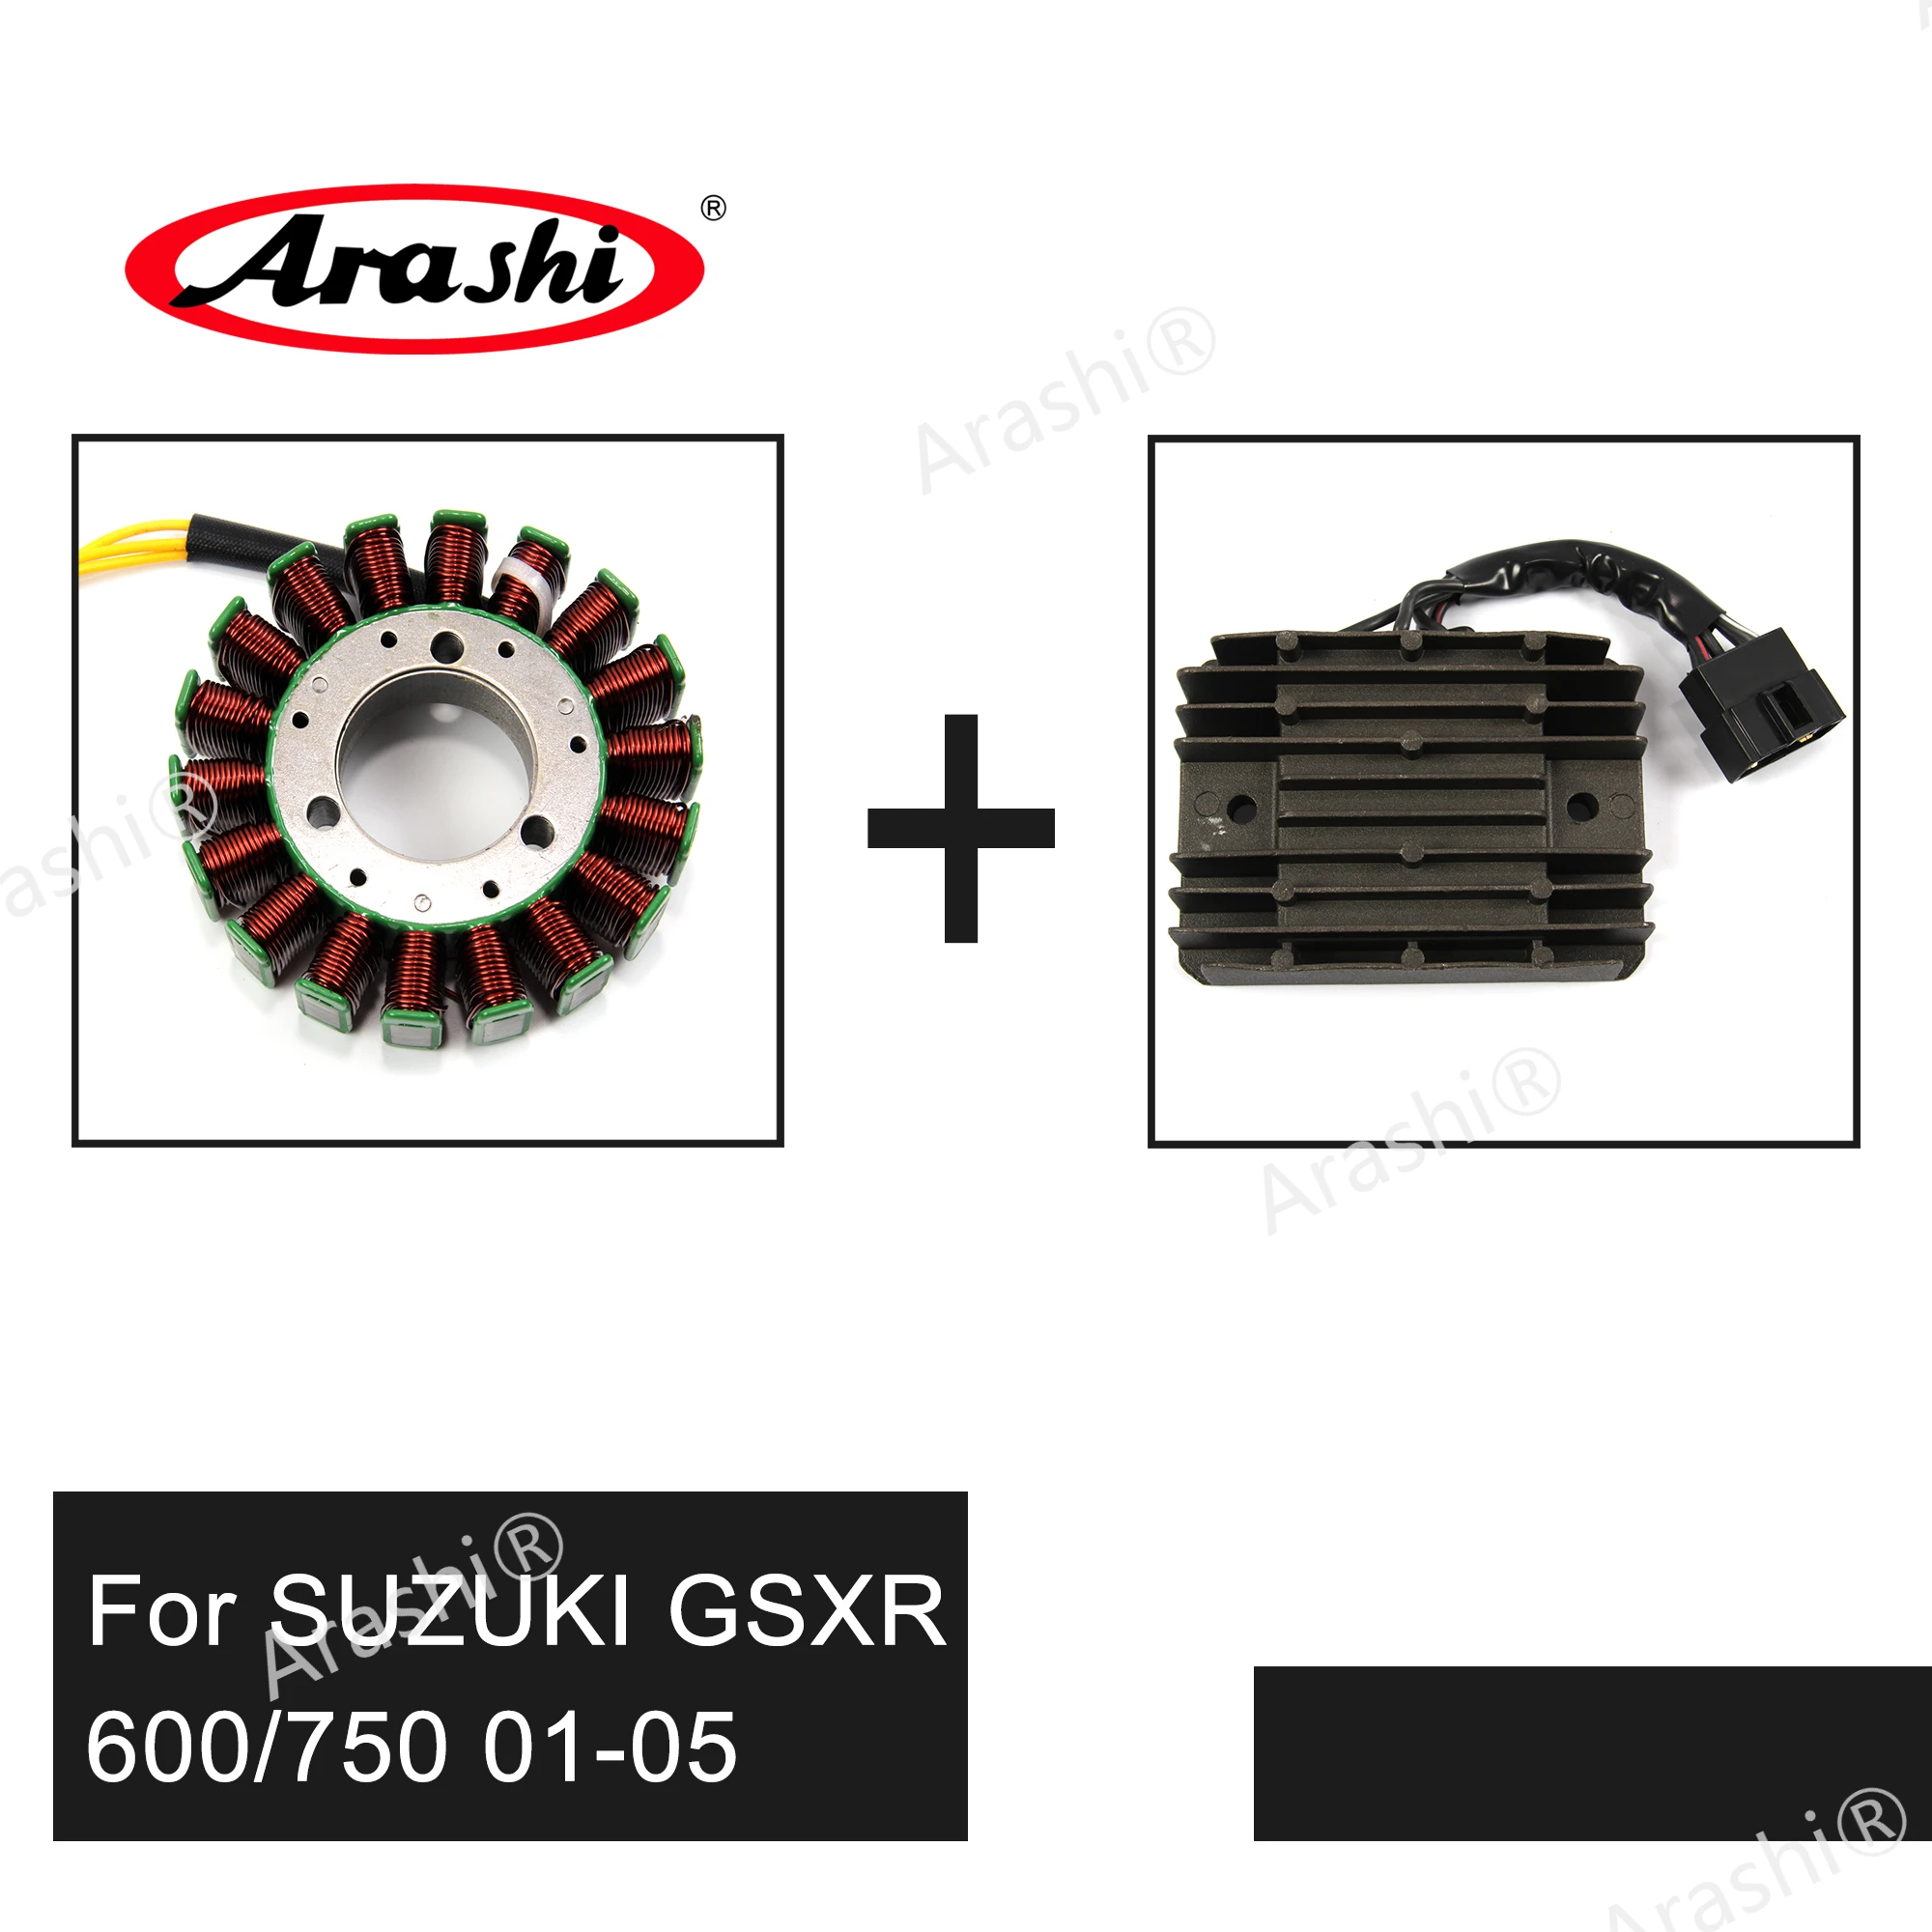 

Arashi For SUZUKI GSXR GSX-R 600 750 2001-2005 Voltage Rectifier Regulator Engine Stator Coil GSXR600 GSXR750 2001 2002 2003